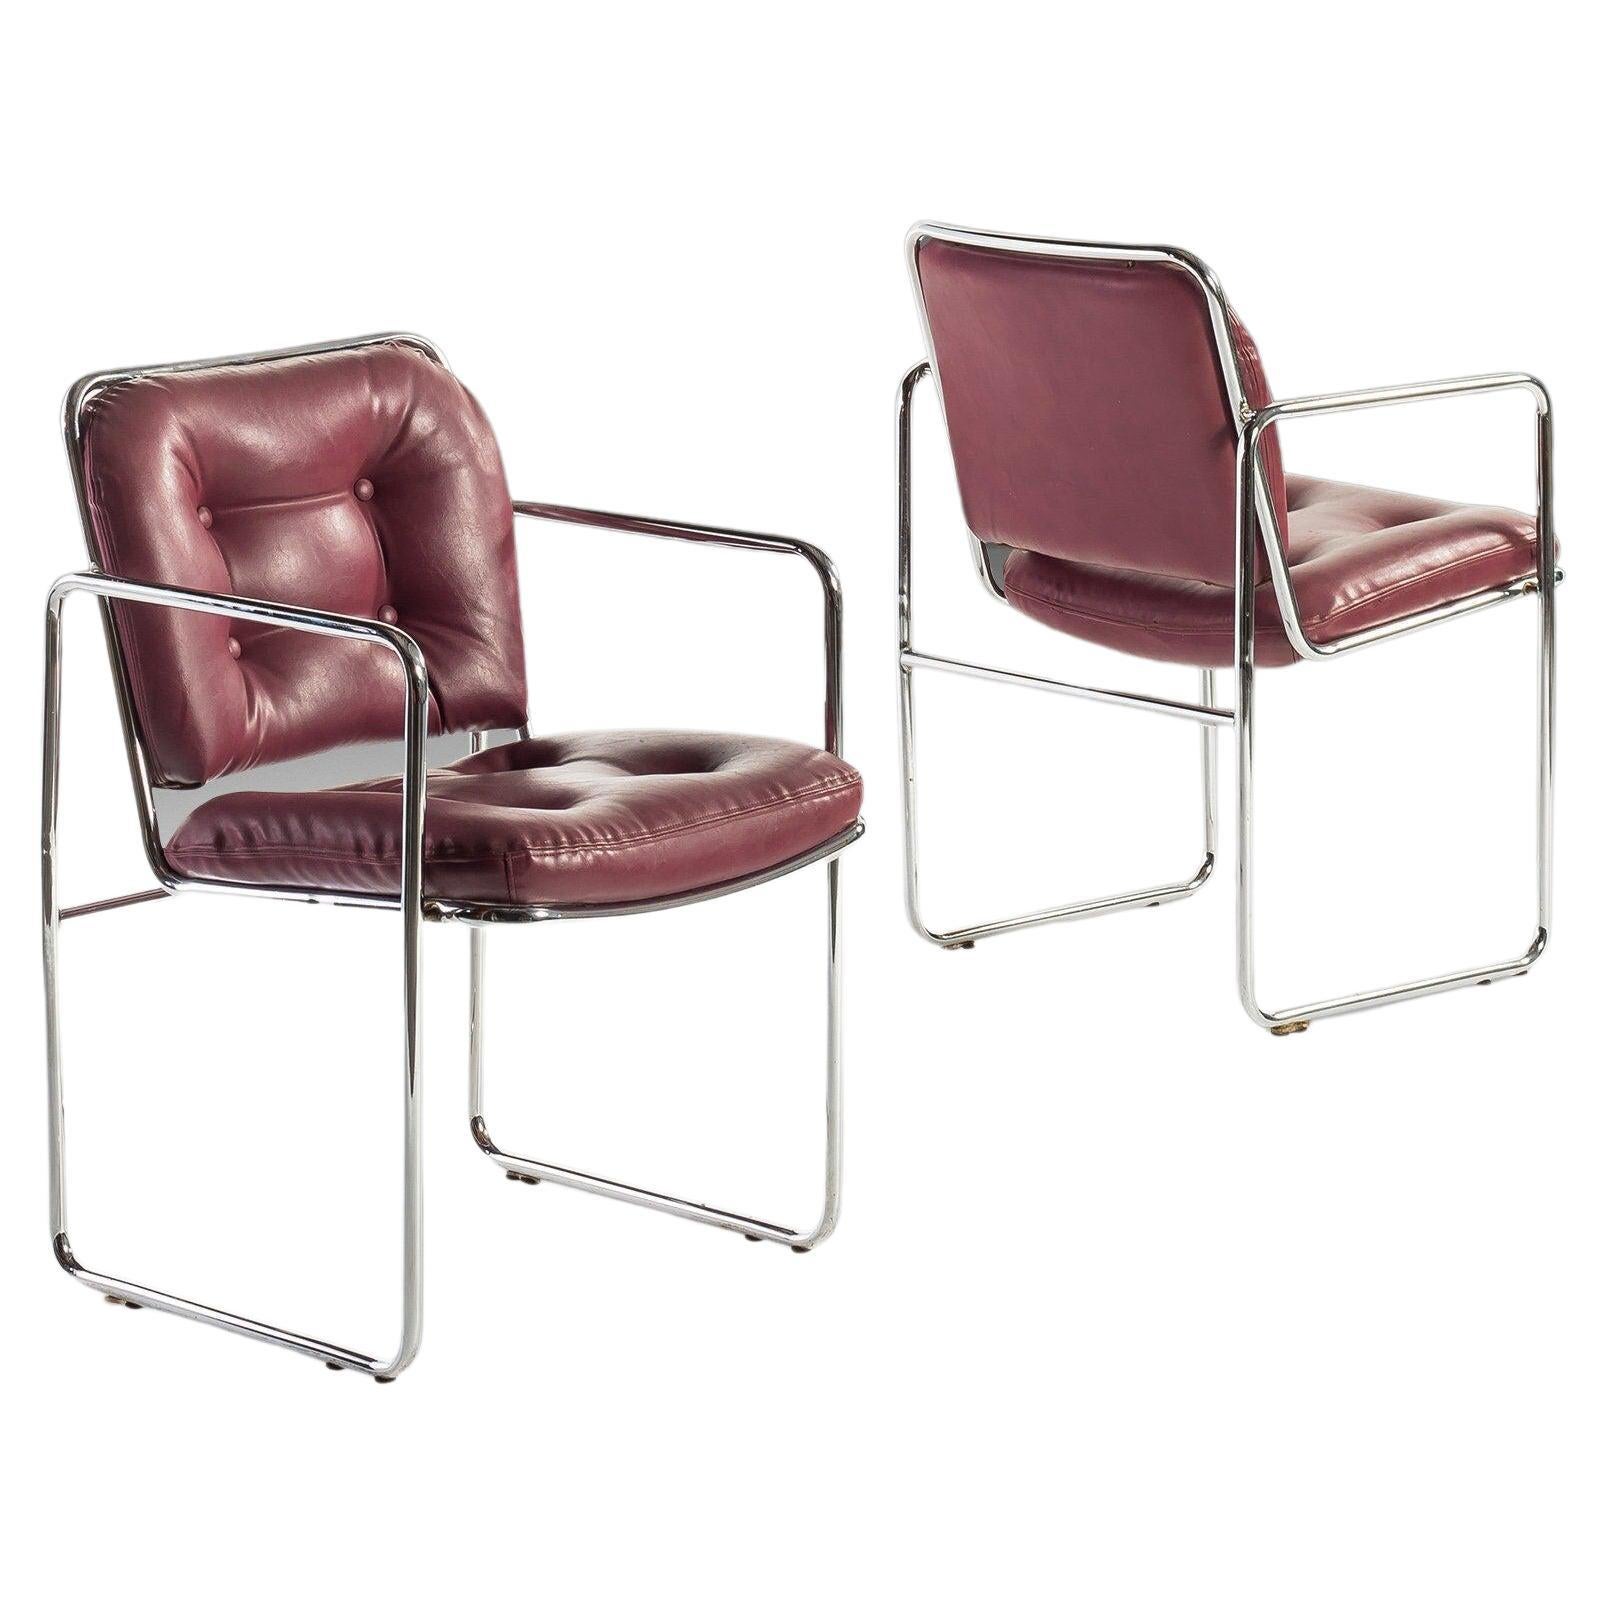 Chaises longues chromées tubulaires MCM de Chromcraft avec riches sièges en forme de sang de bœuf, vers les années 1960